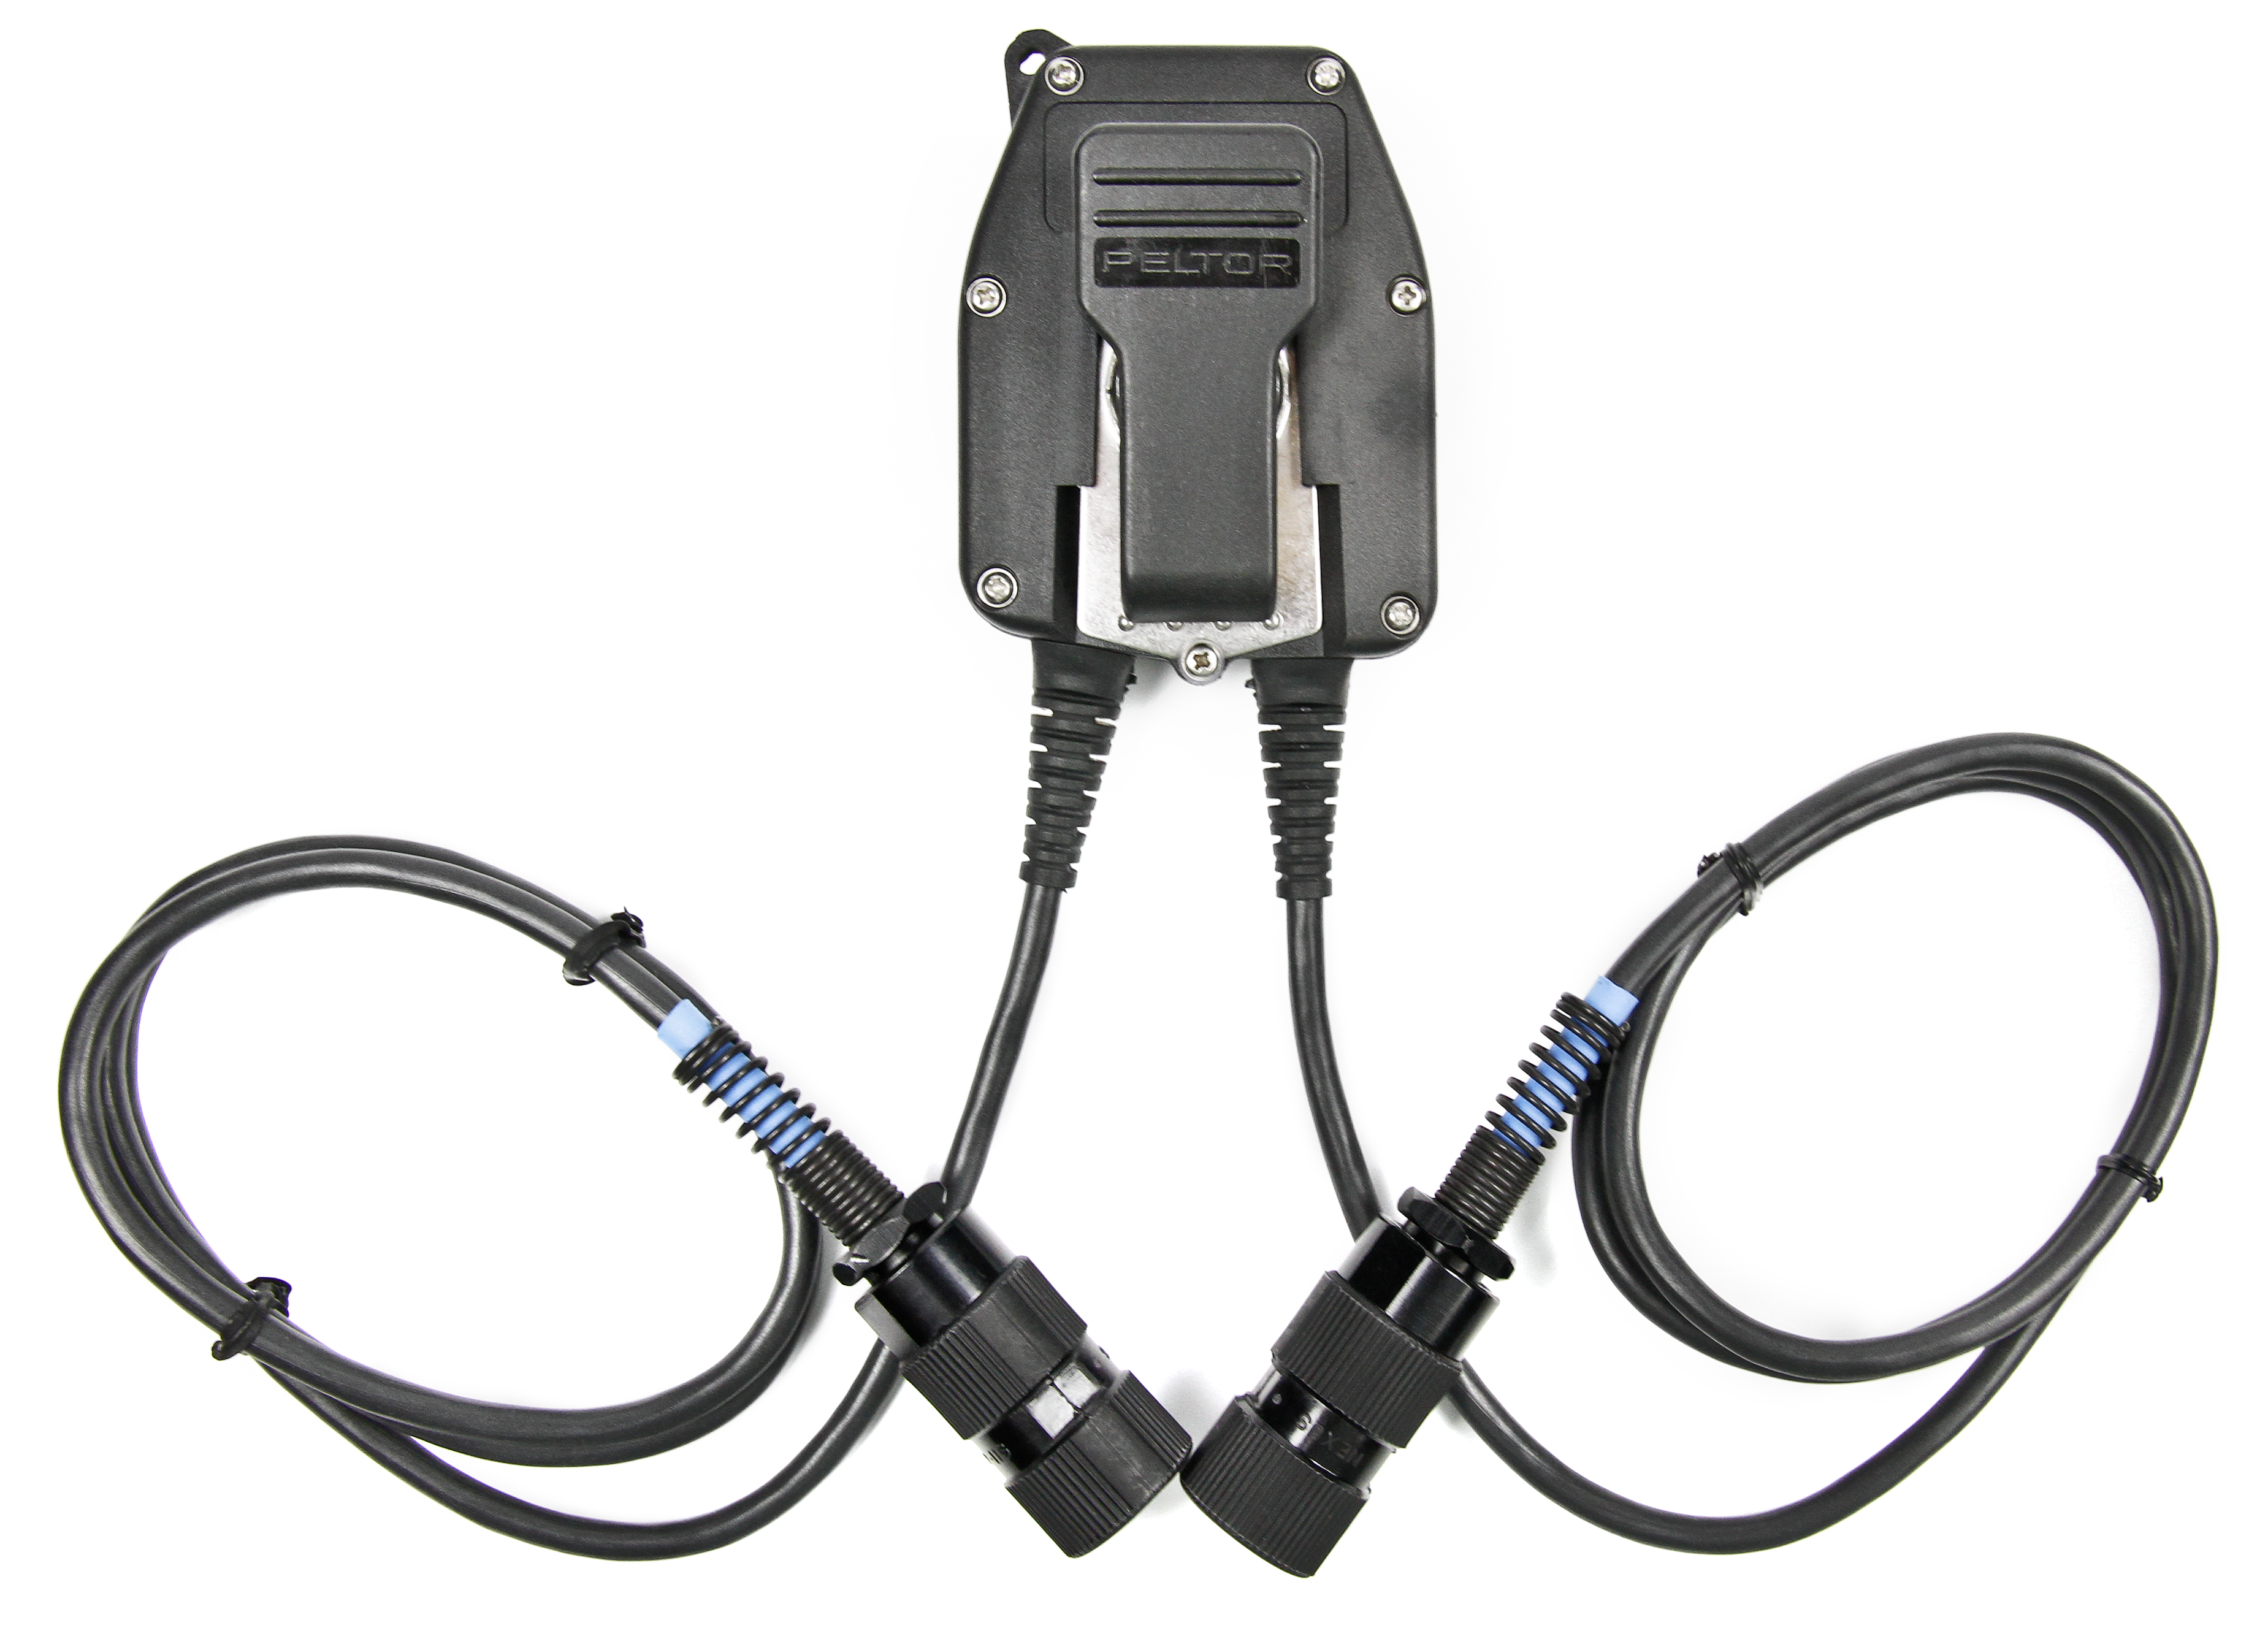 Adaptateur PTT (Push-To-Talk) 3M ™ PELTOR ™ pour radios militaires FL5701, avec connecteur 6 broches MIL-C-55116, 1 EA / caisse